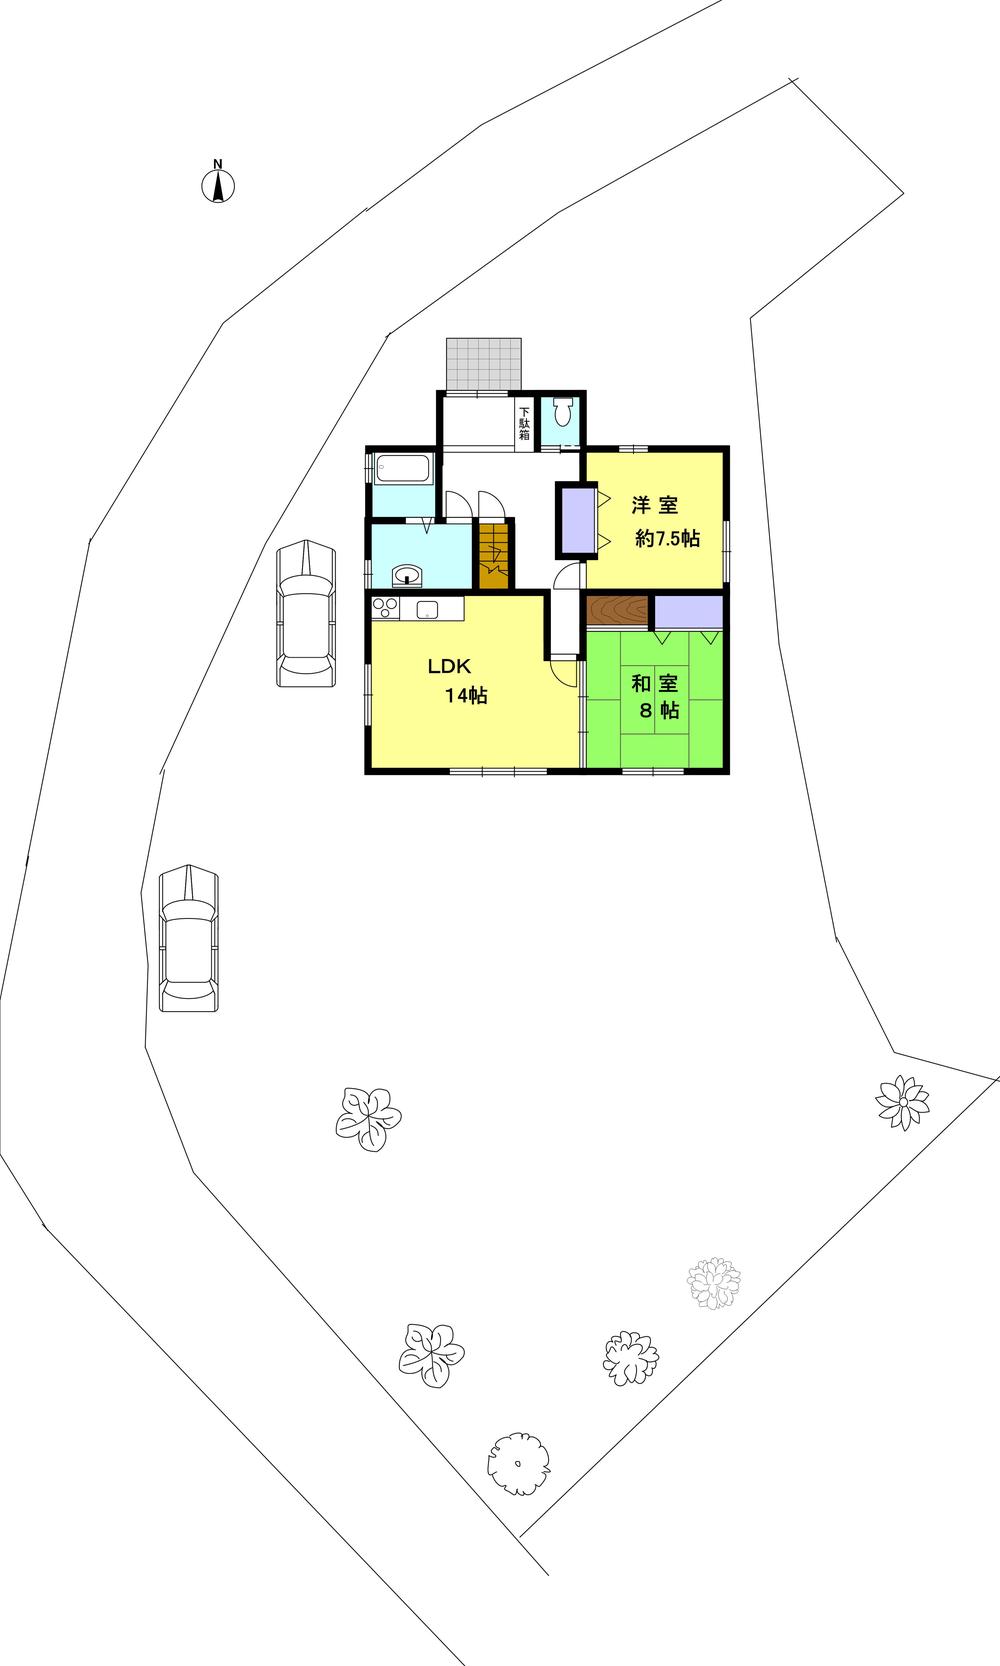 Floor plan. 15.8 million yen, 2LDK, Land area 421.12 sq m , Building area 80 sq m